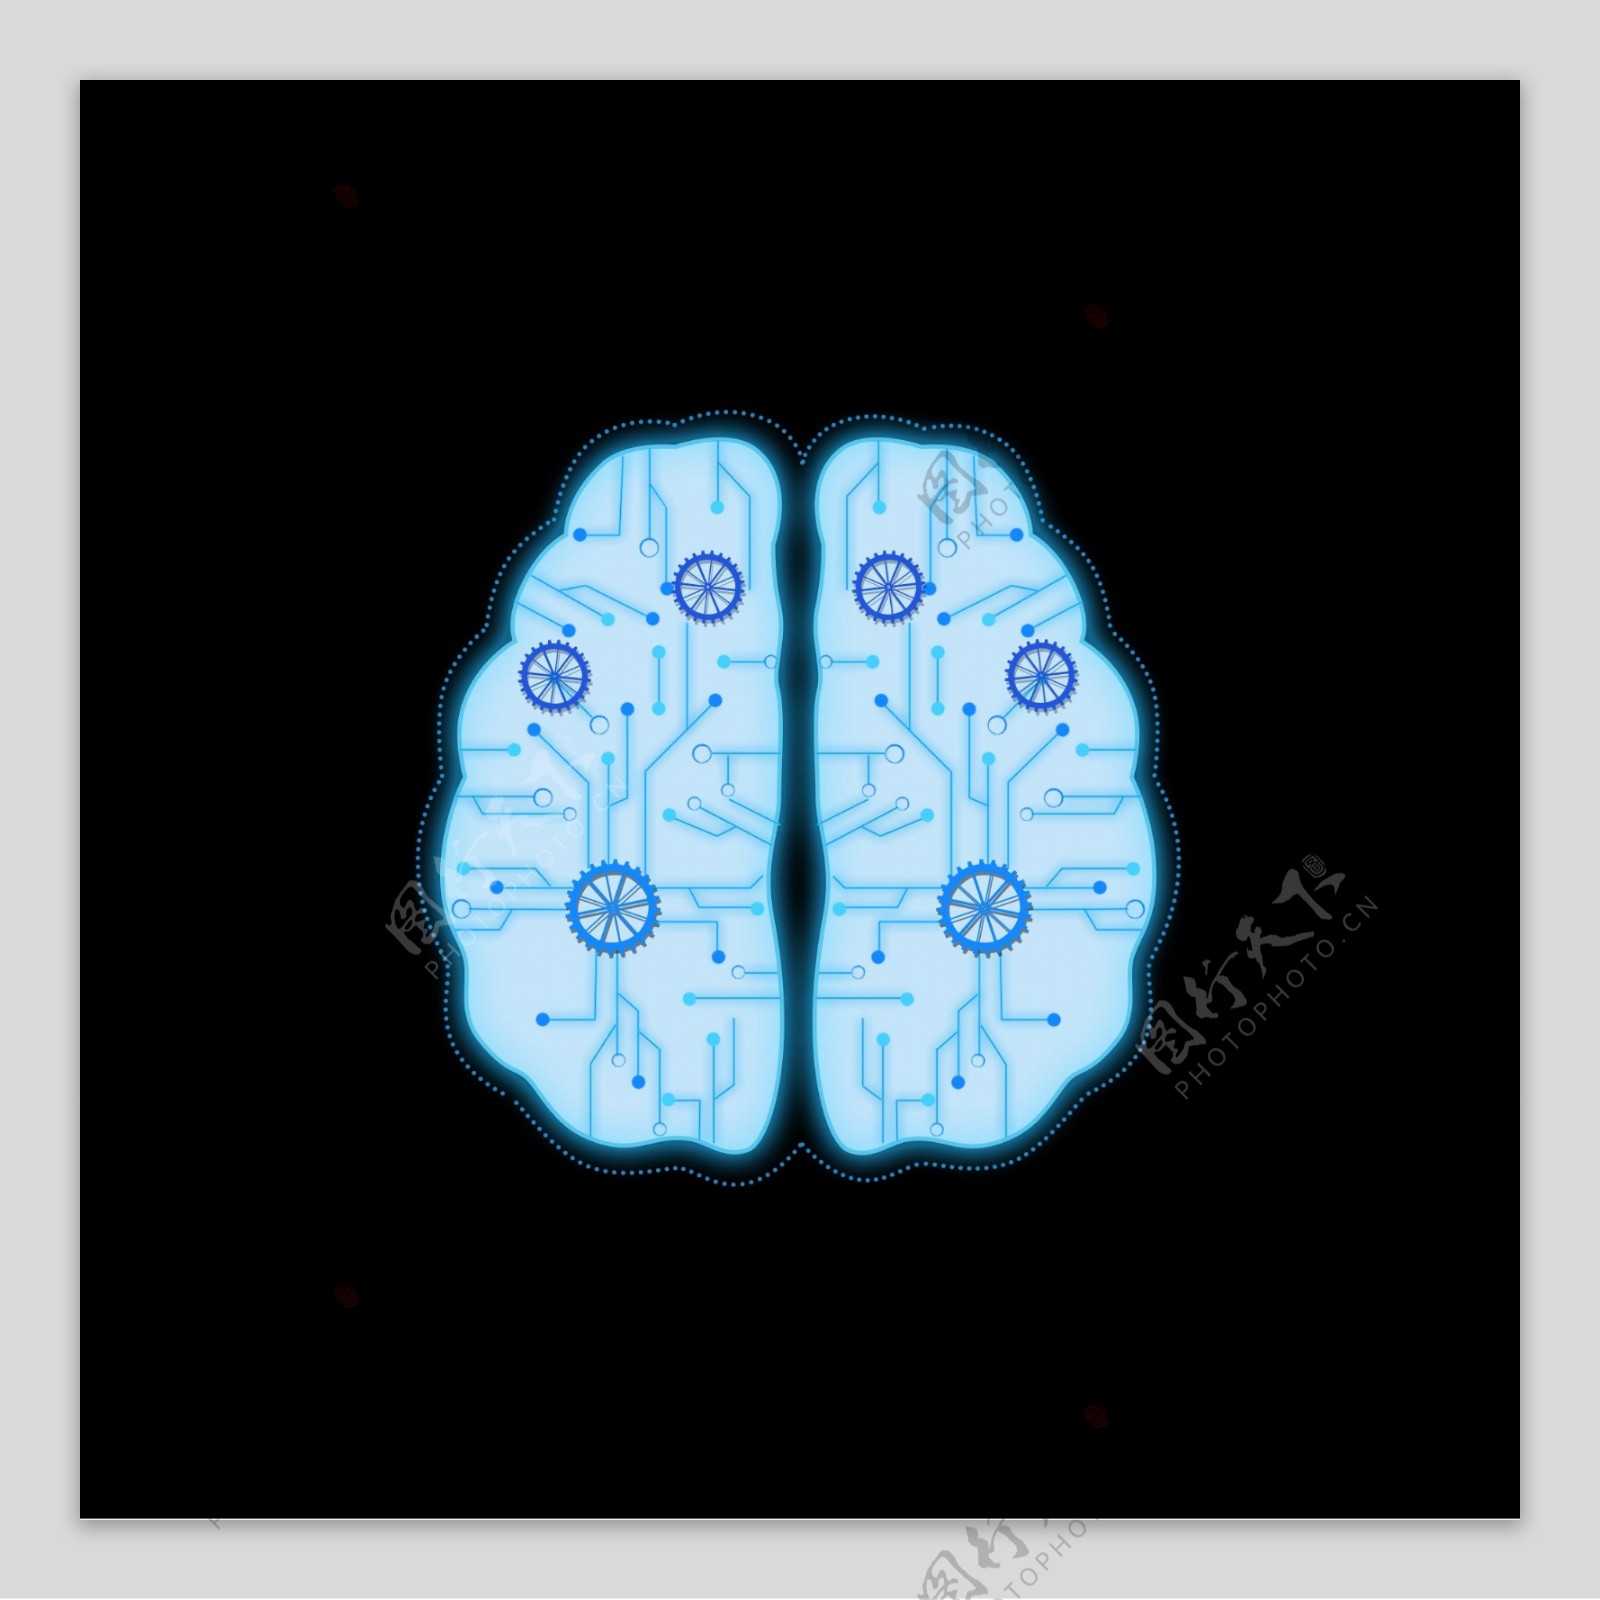 人工智能科技大脑齿轮蓝色素材